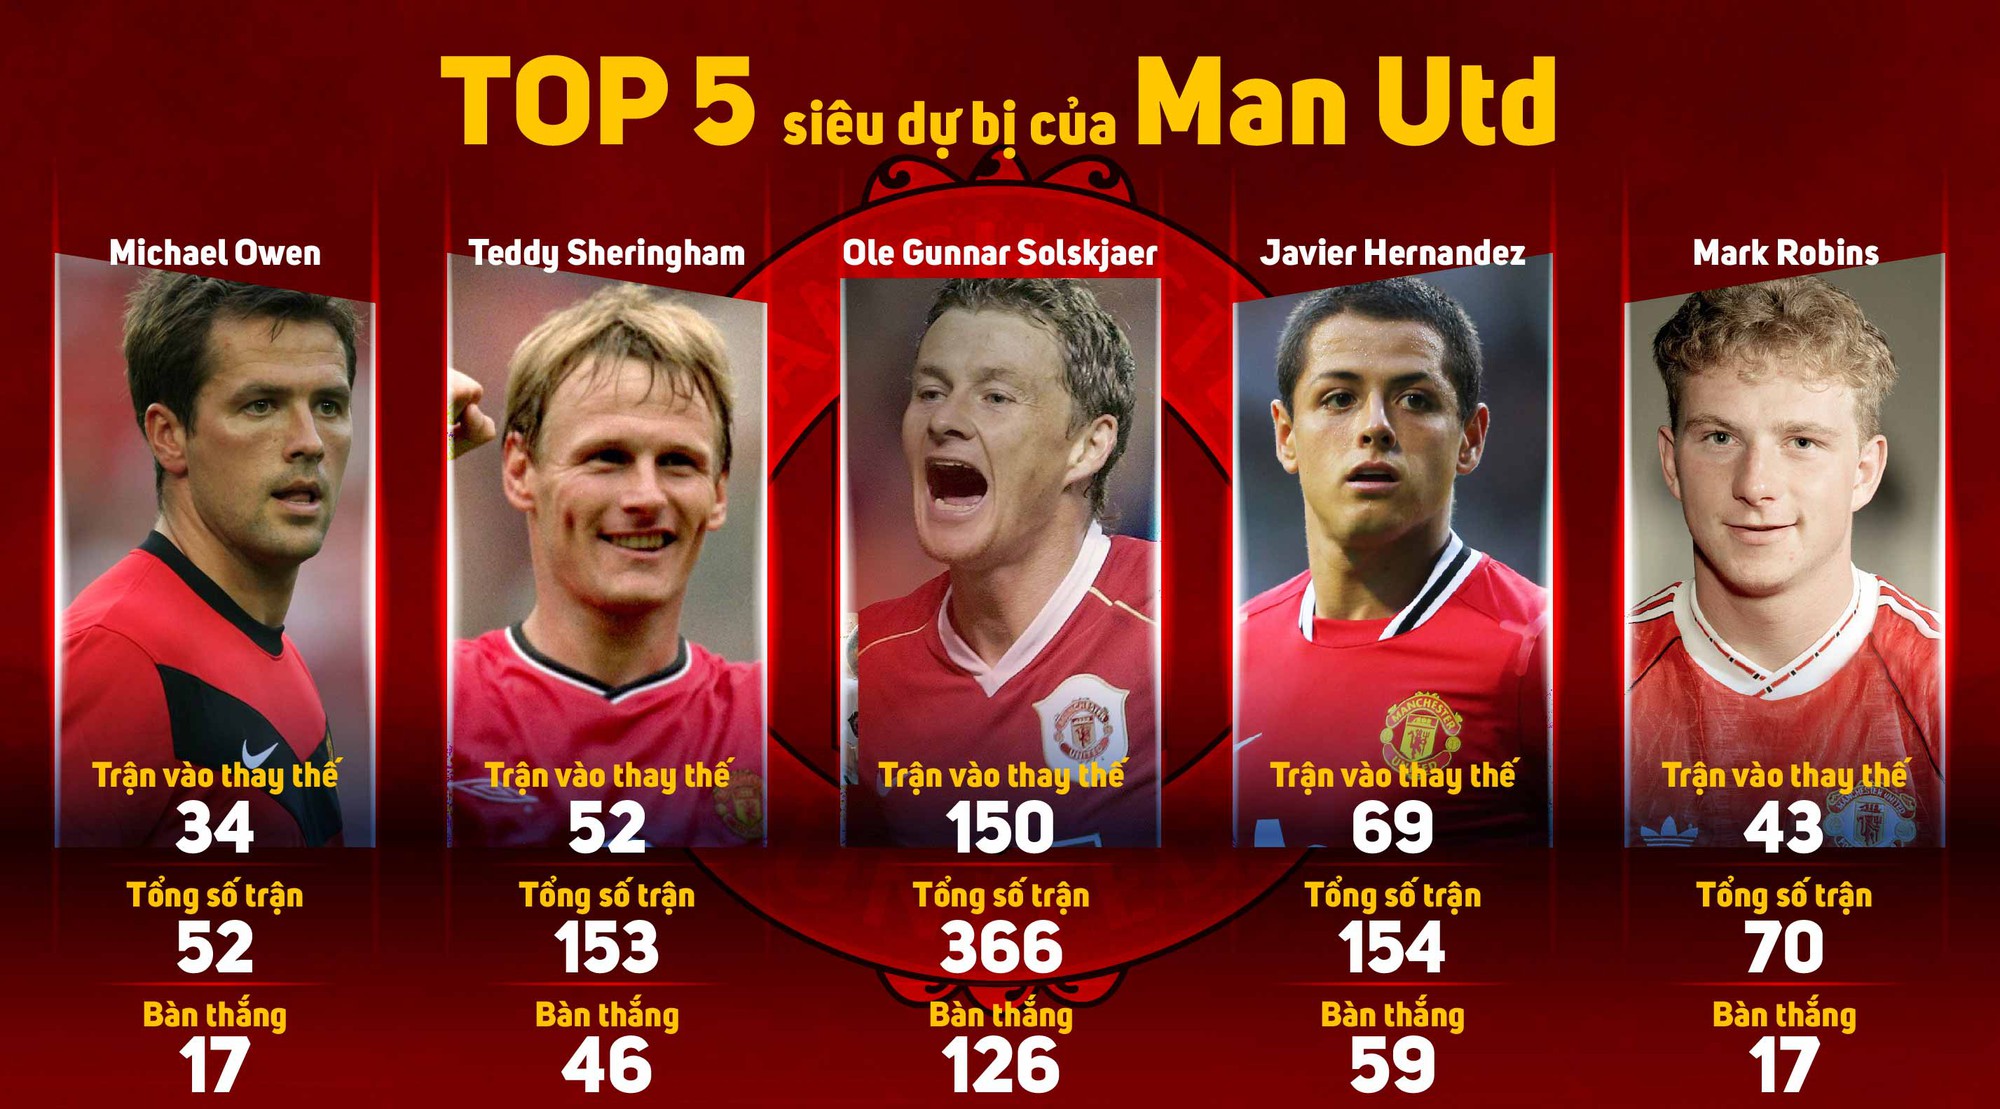 Top 5 siêu dự bị của Man Utd